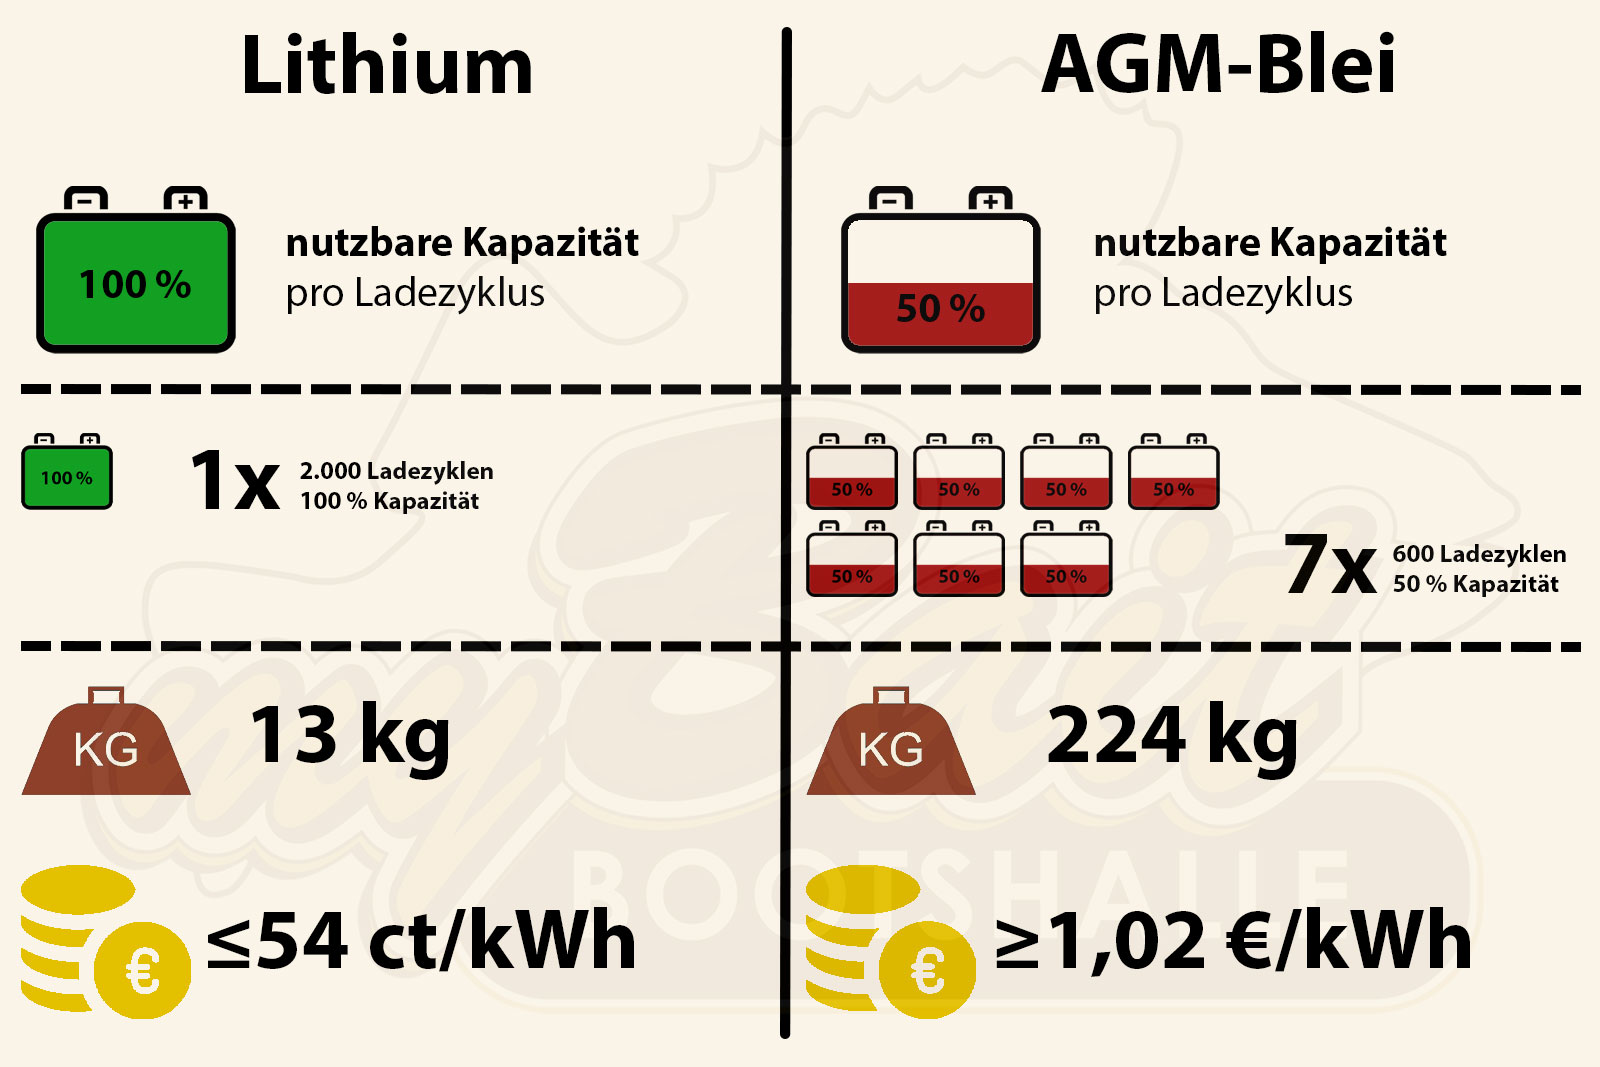 Lithiumbatterie und AGM-Bleibatterie im Vergleich